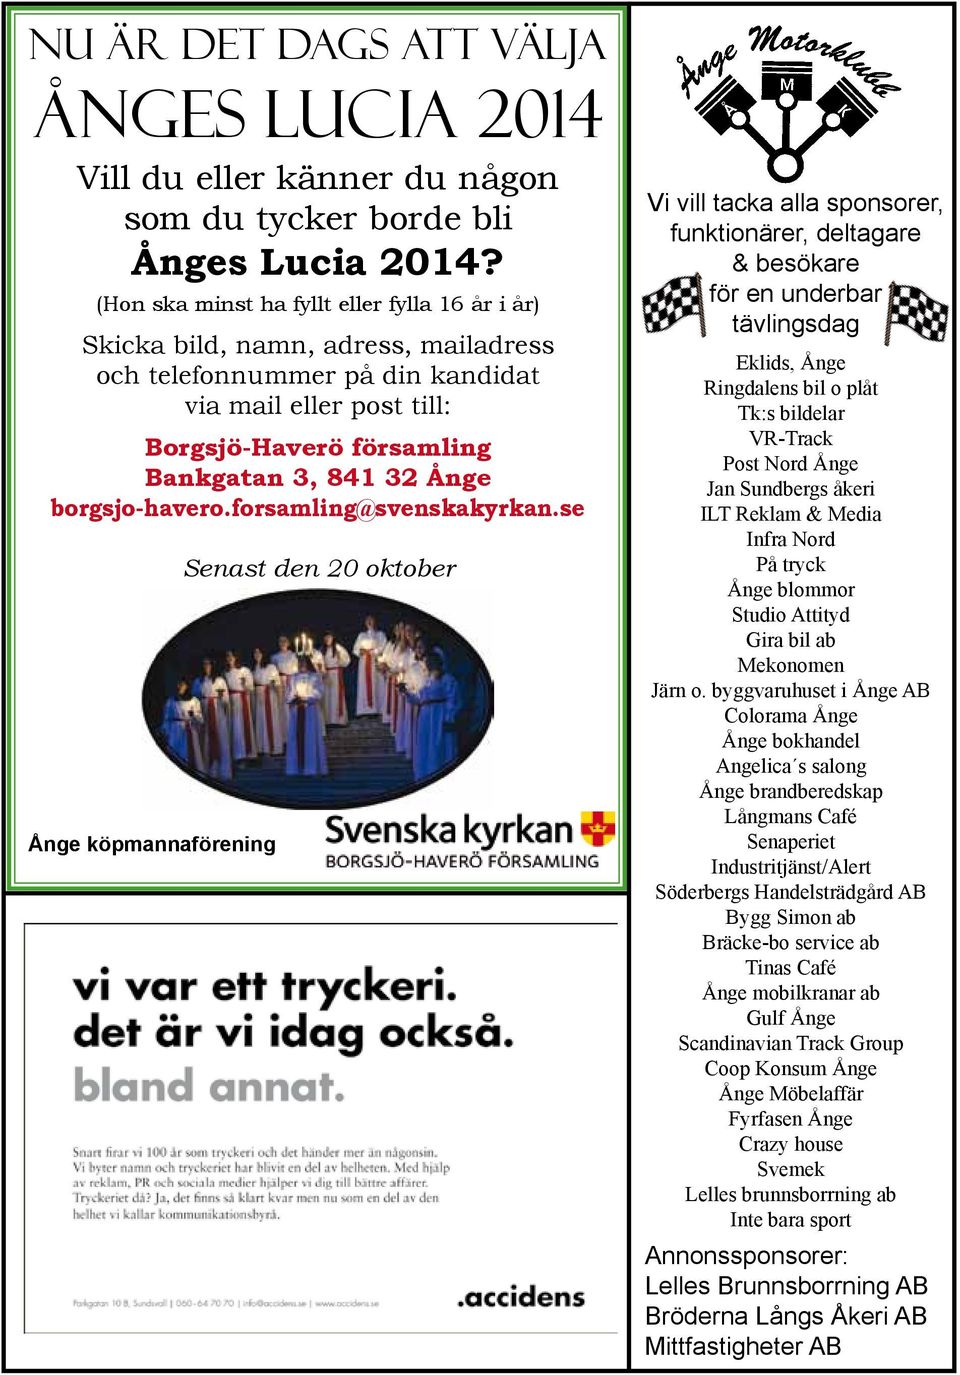 borgsjo-havero.forsamling@svenskakyrkan.